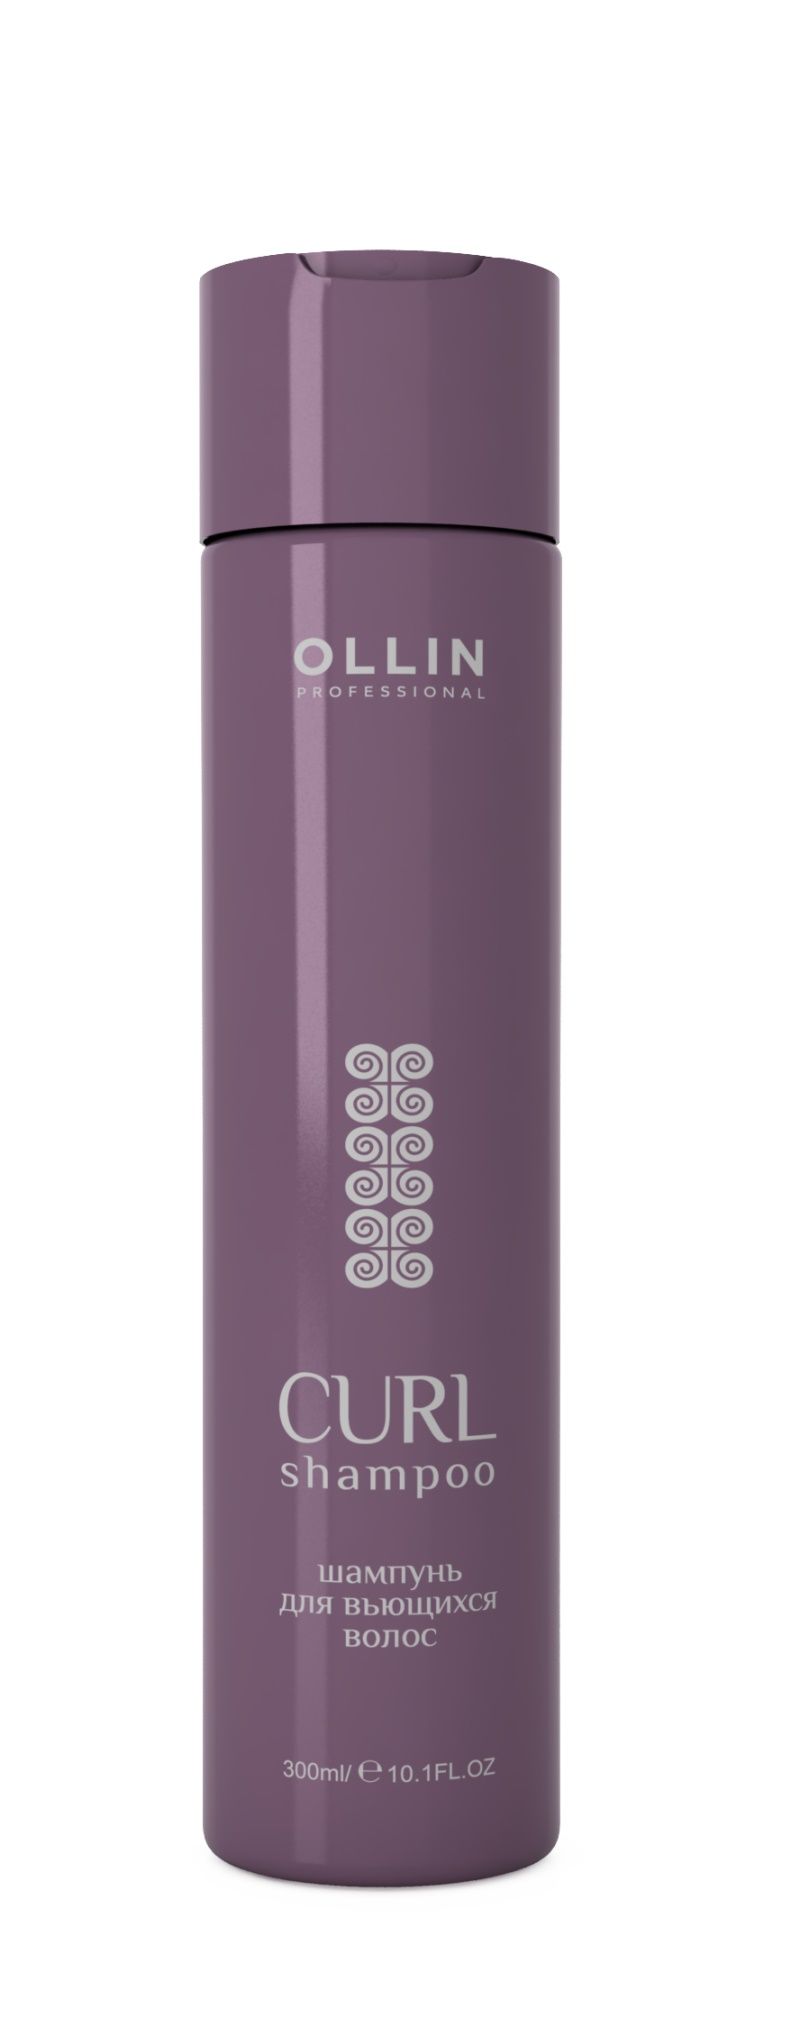 Ollin, Шампунь для вьющихся волос серии «Curl Hair», Фото интернет-магазин Премиум-Косметика.РФ